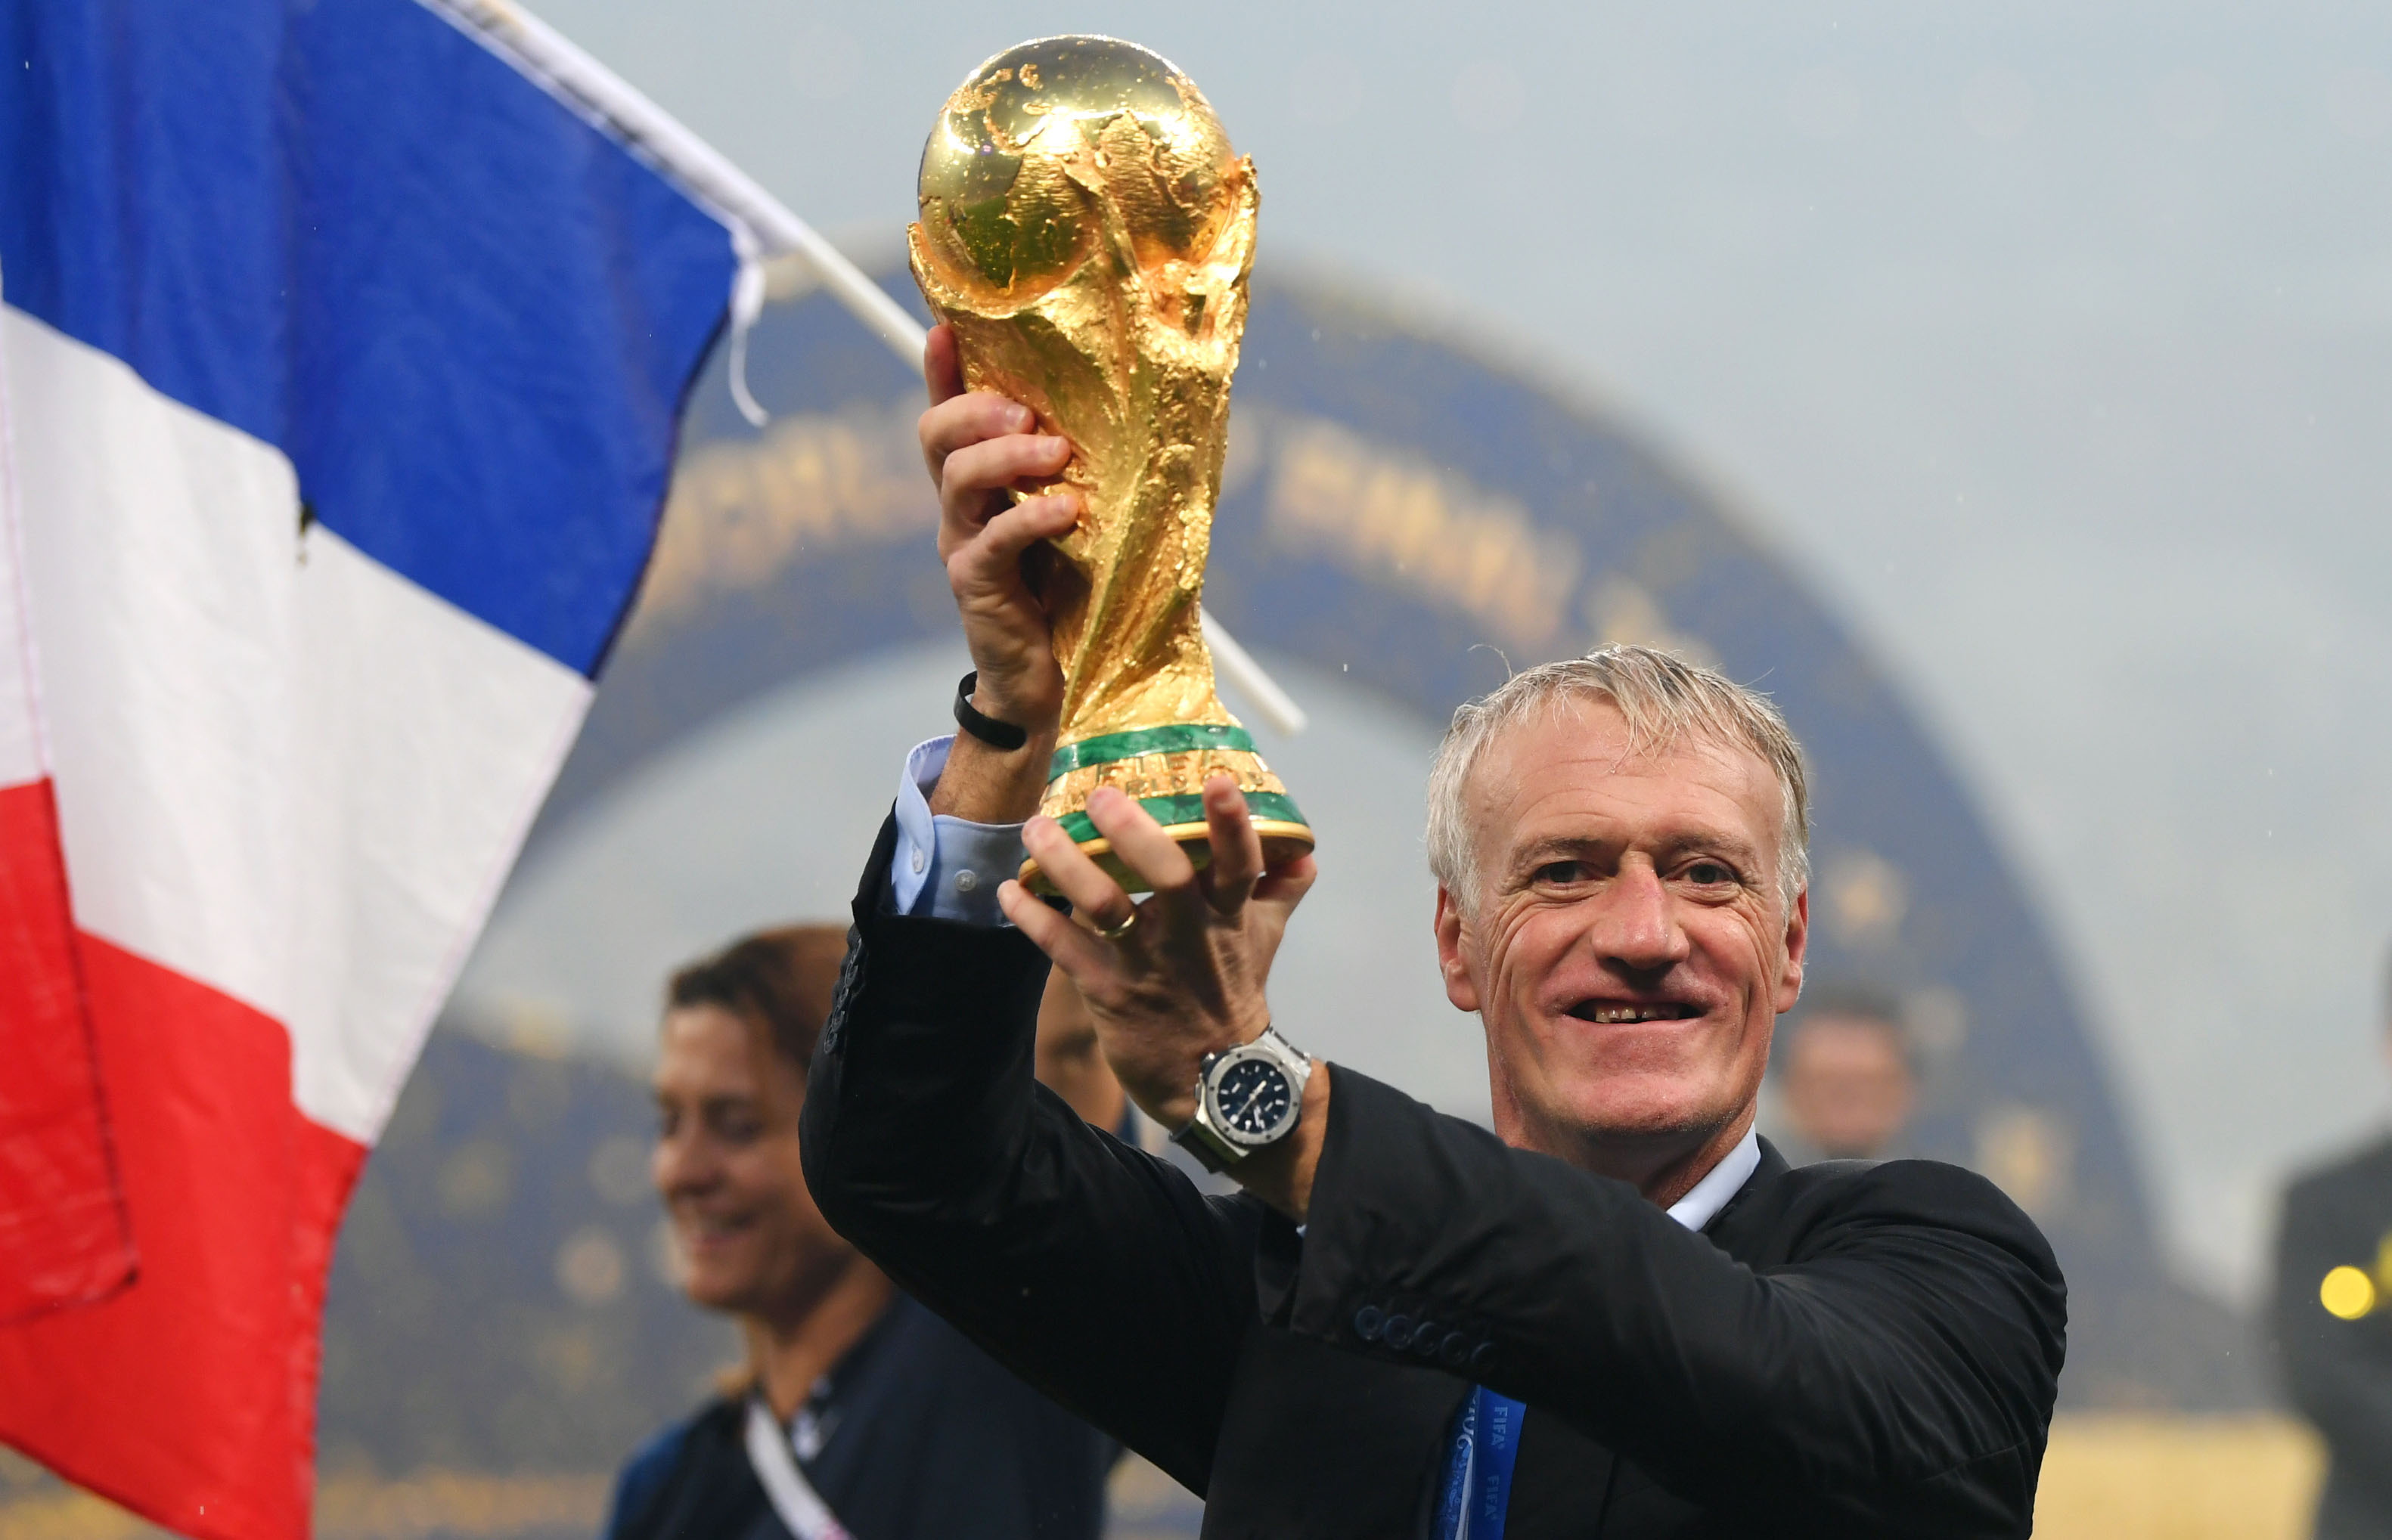 Campeón del mundo como jugador en 1998, Didier Deschamps conquistó también el Mundial como entrenador de Francia en 2018. Shaun Botterill/Getty Images